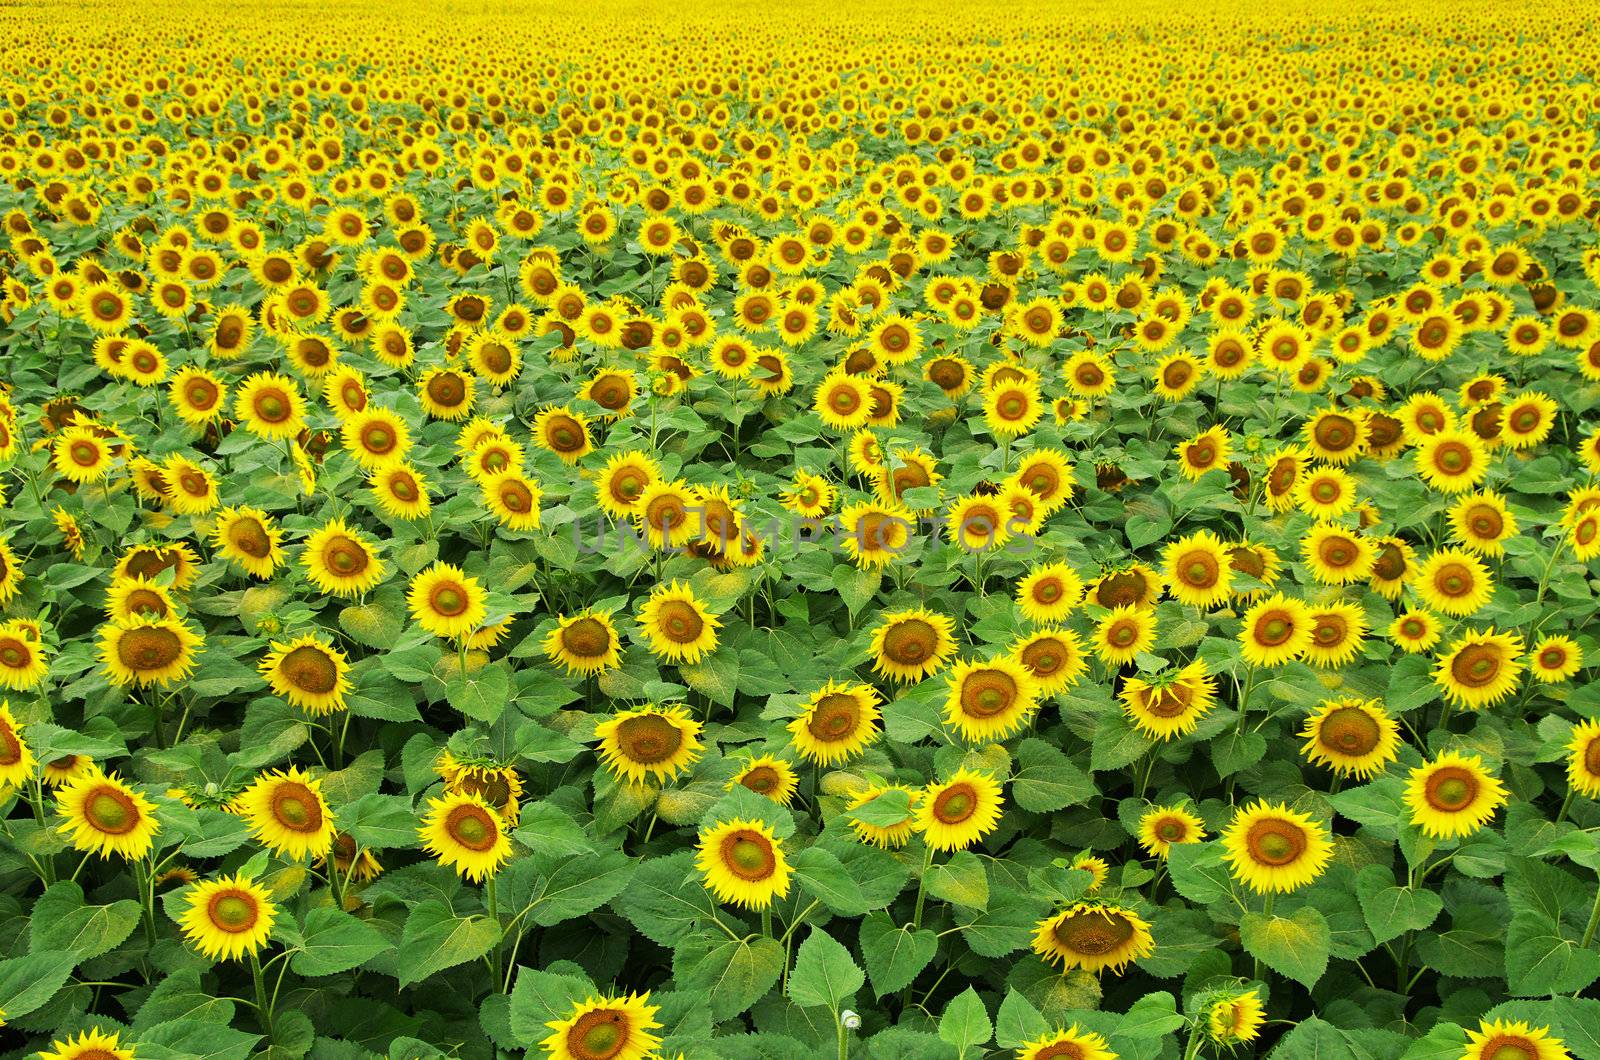  sunflowers by Pakhnyushchyy